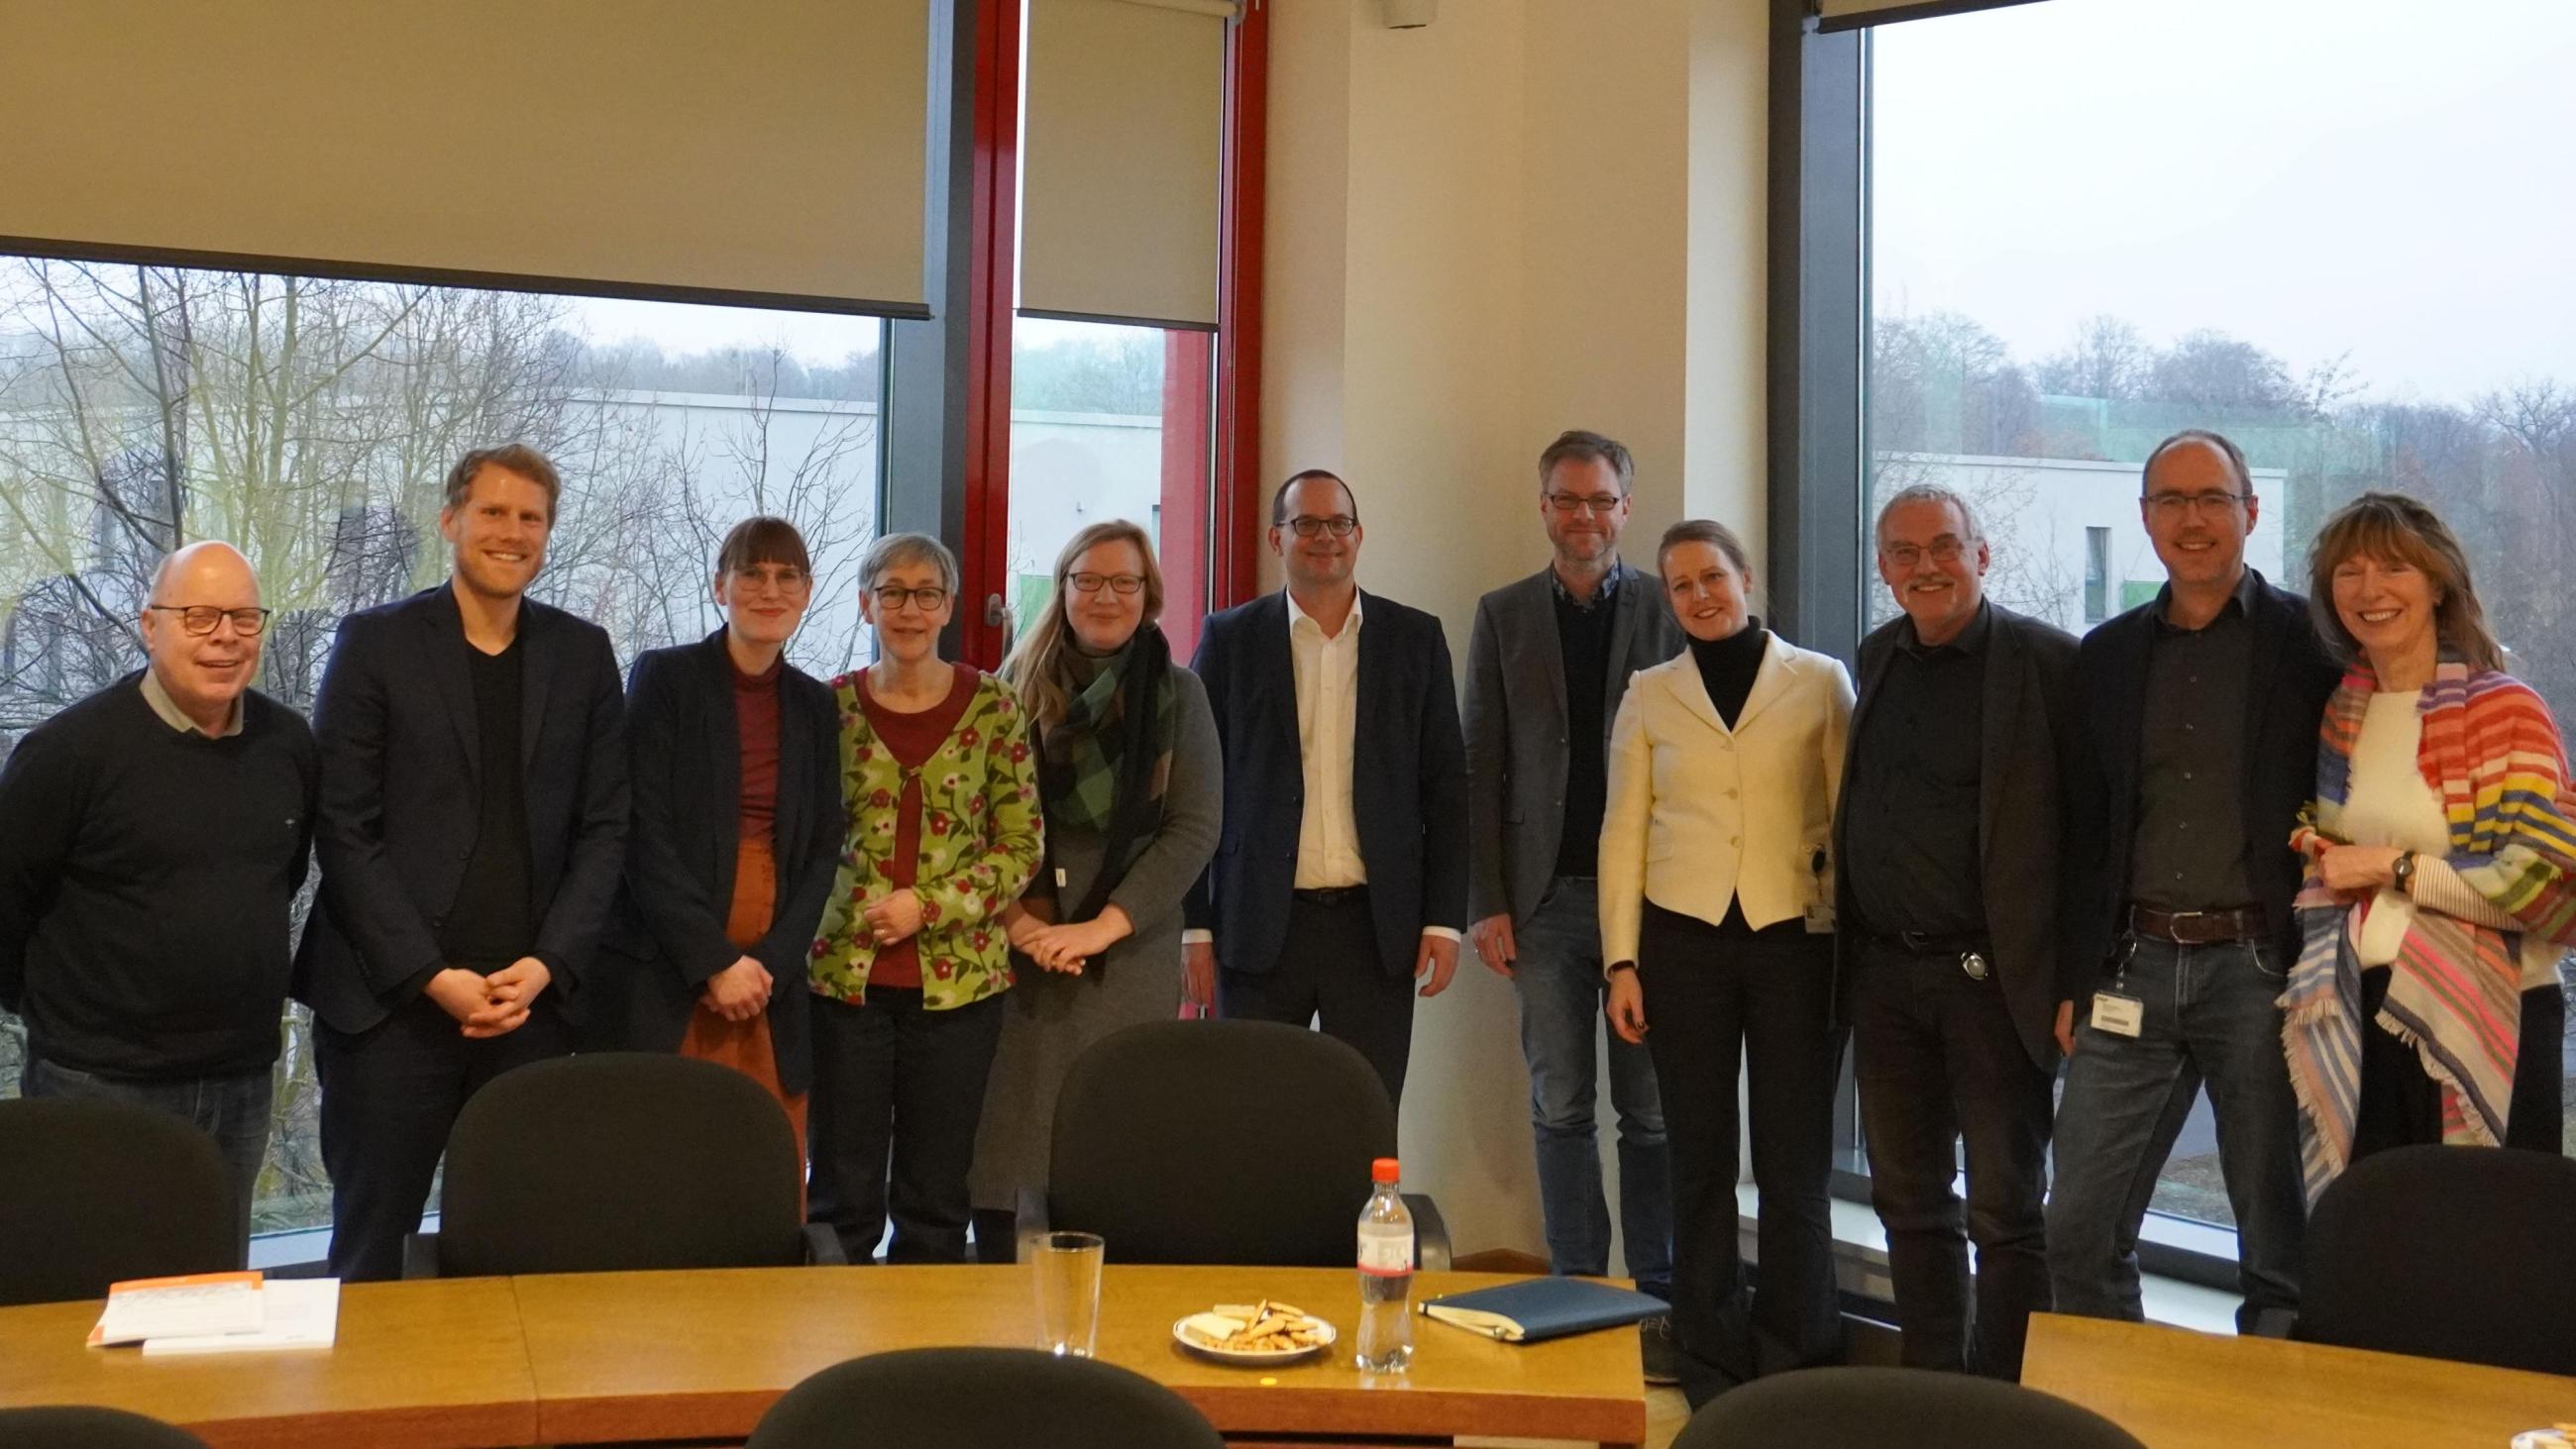 Gruppenbild mit Staatssekretär Dünow (Mitte) beim Treffen mit den Vernetzungs- und Koordinierungsstellen an der FH Potsdam